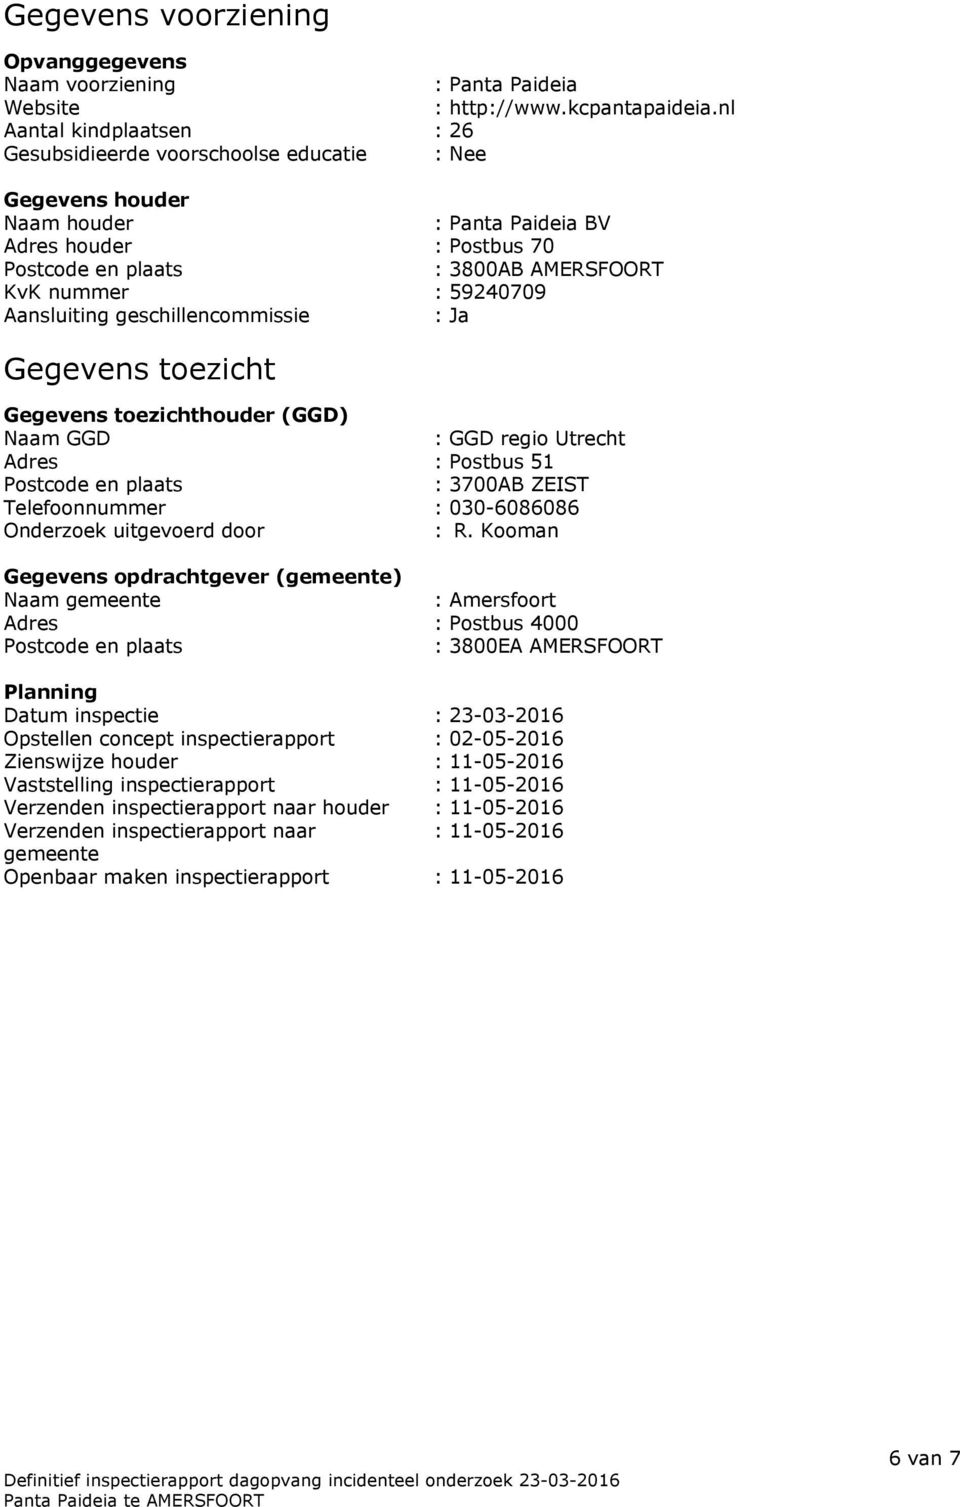 59240709 Aansluiting geschillencommissie : Ja Gegevens toezicht Gegevens toezichthouder (GGD) Naam GGD : GGD regio Utrecht Adres : Postbus 51 Postcode en plaats : 3700AB ZEIST Telefoonnummer :